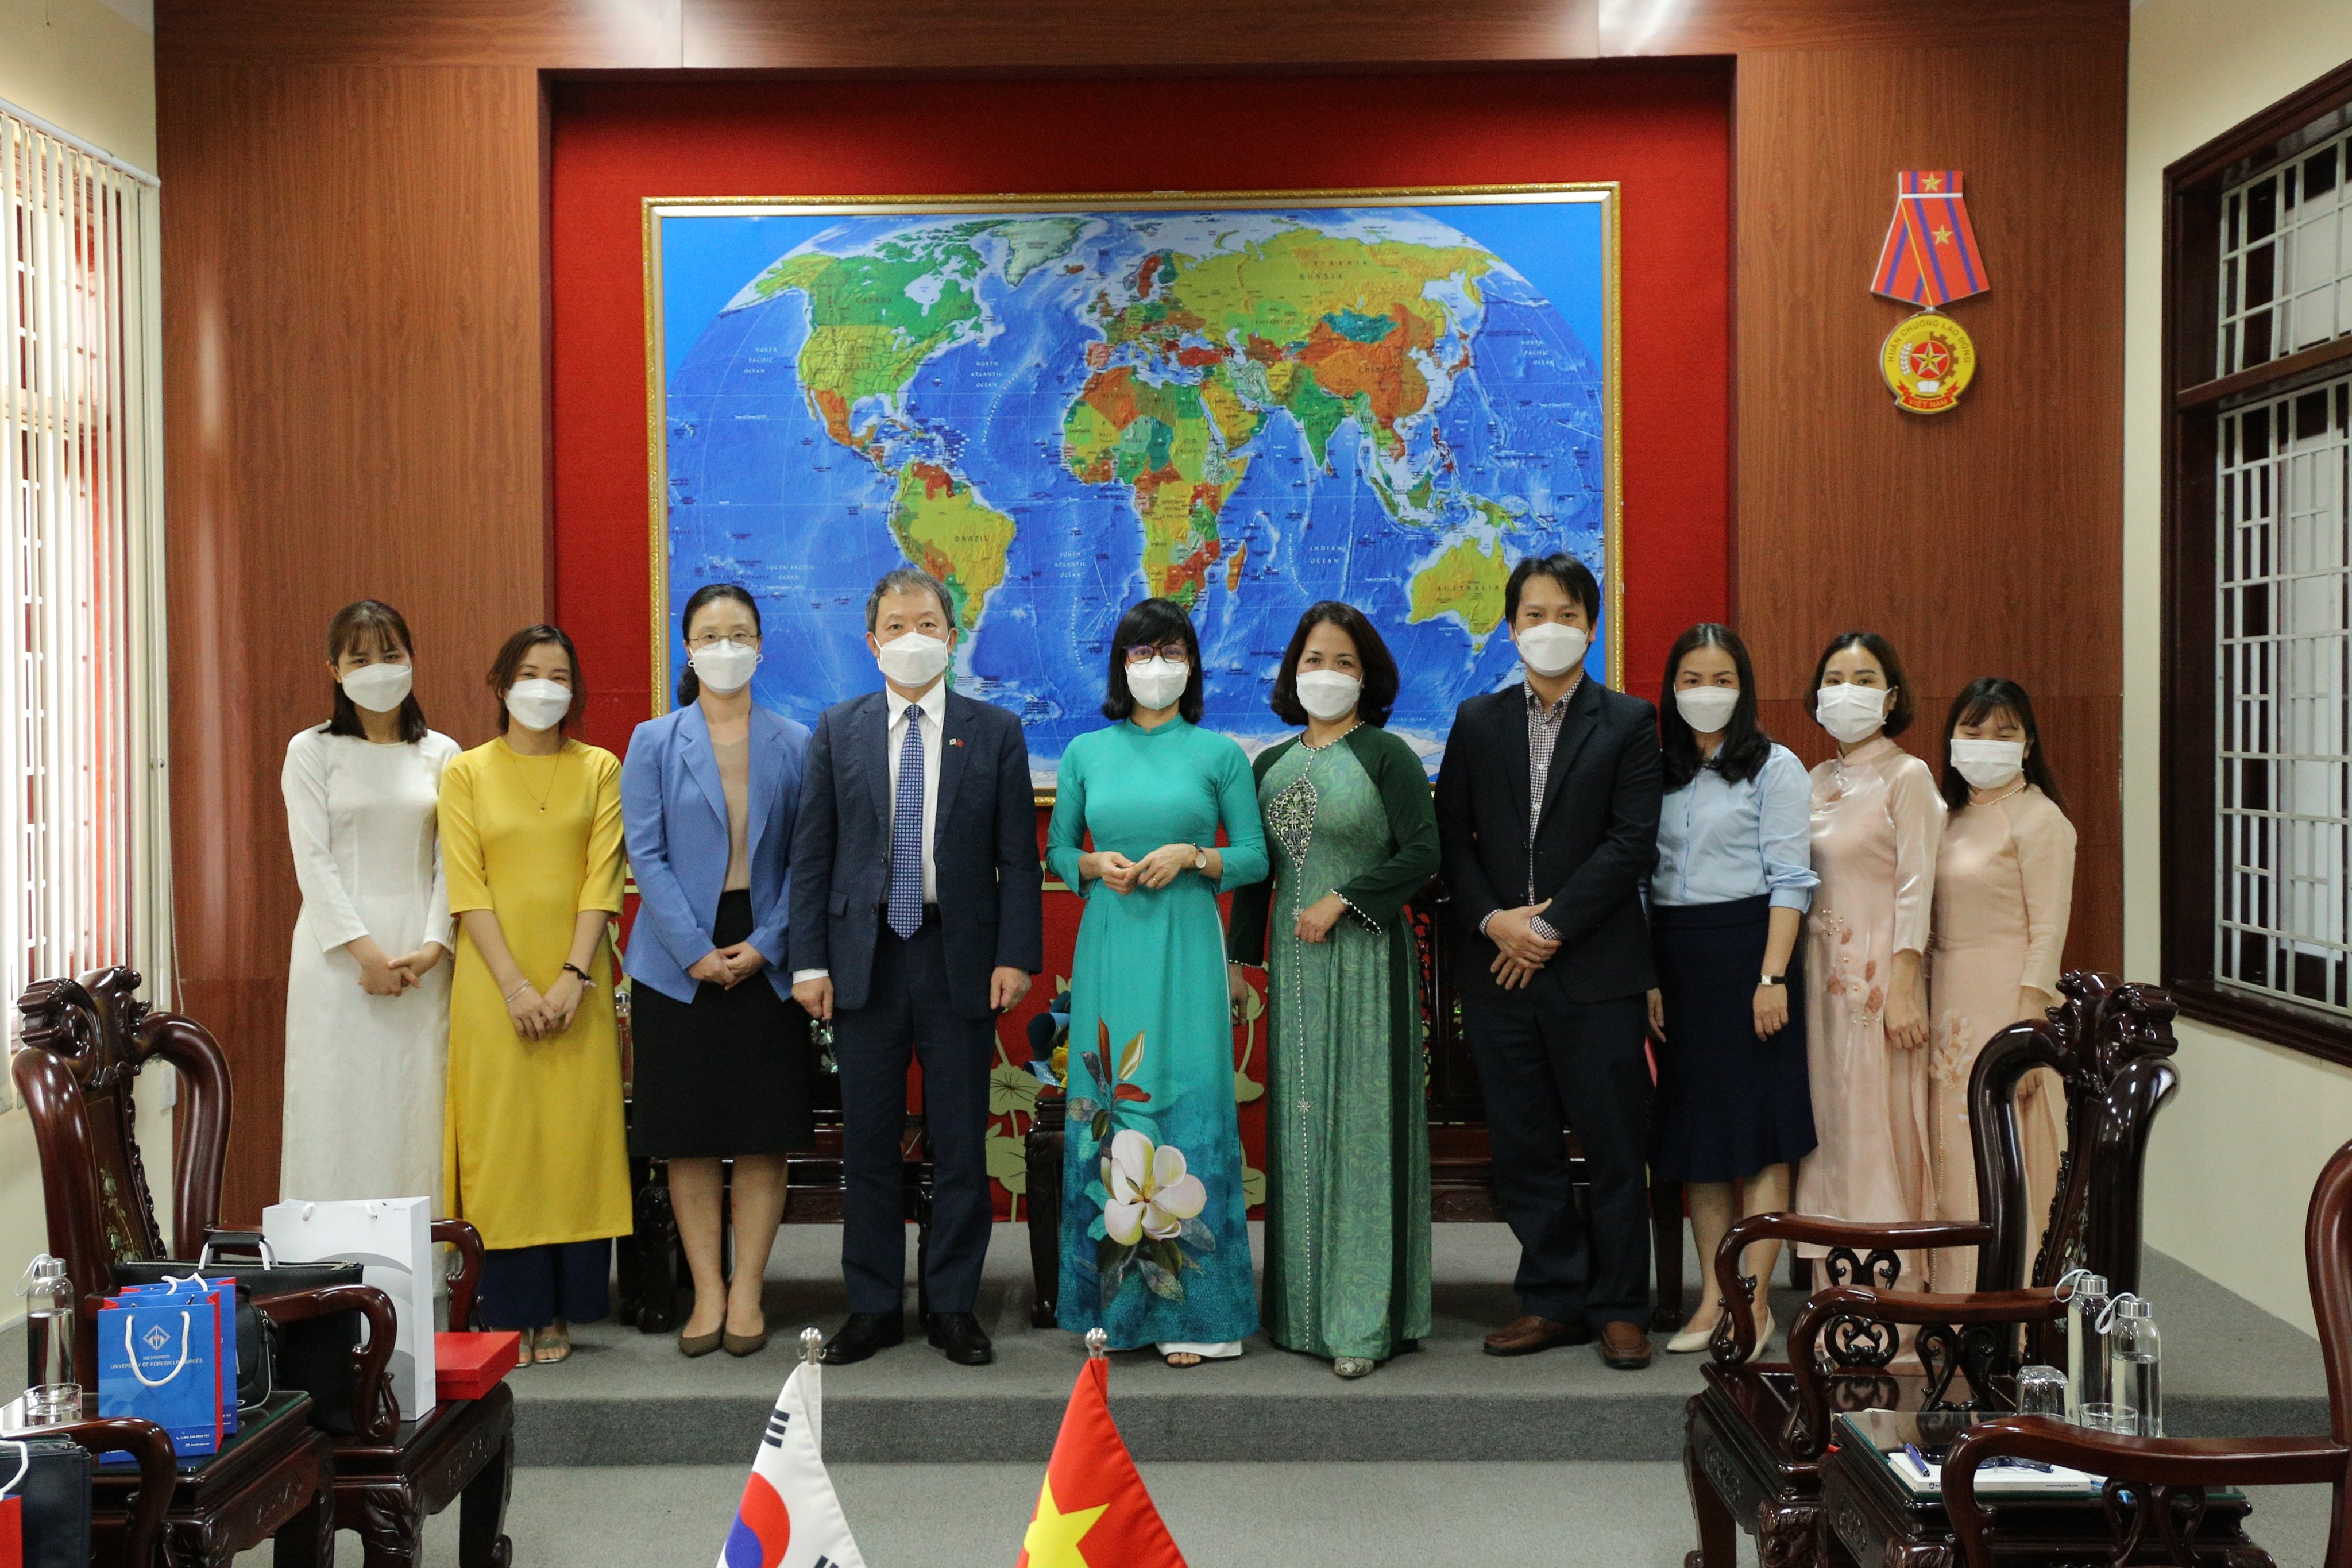 visit-from-consulate-general-of-republic-of-korea-in-danang-vietnam